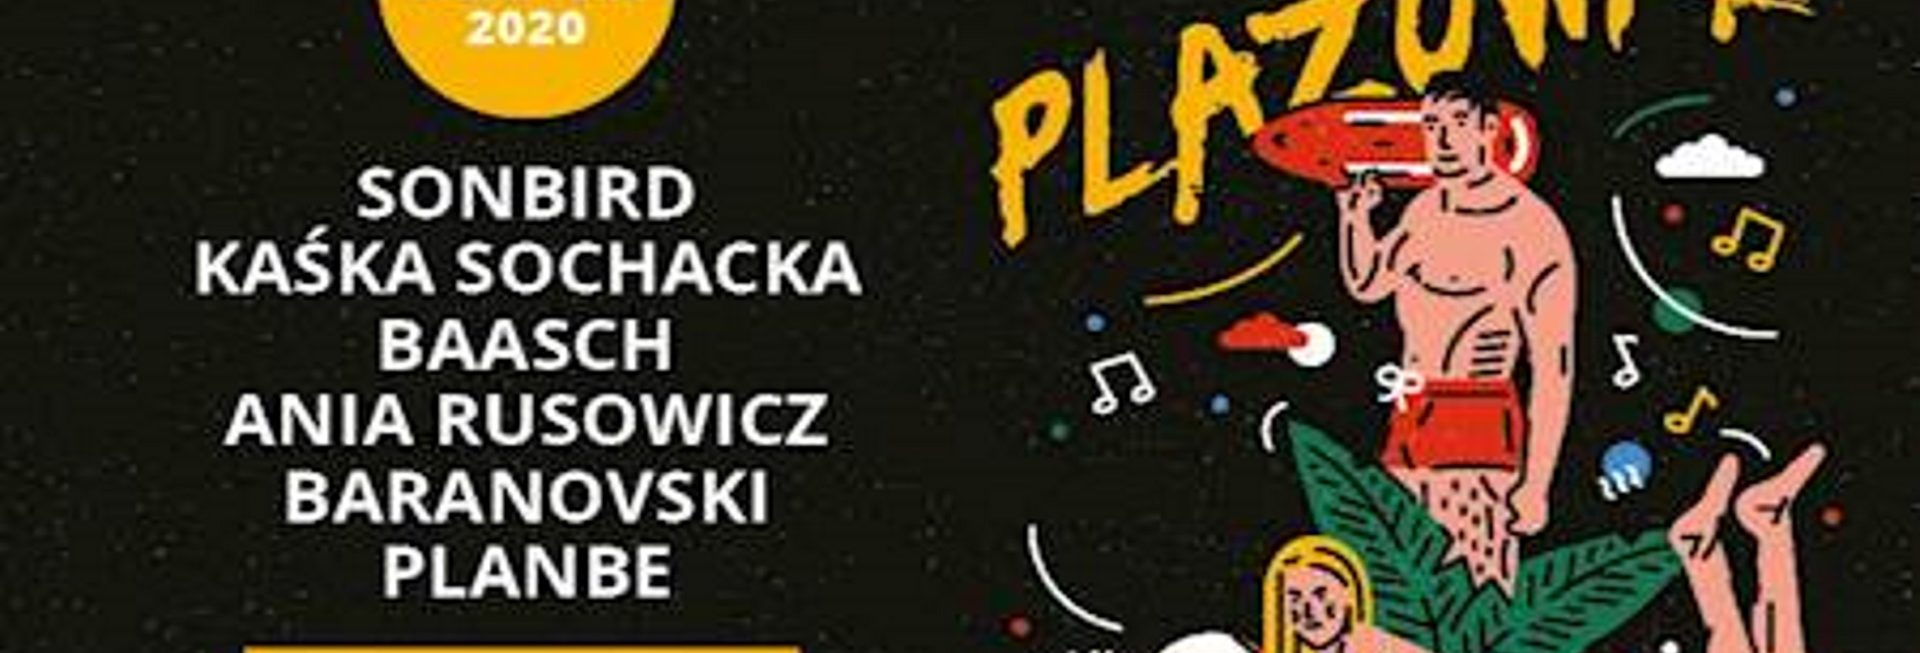 Plakat graficzny zapraszający w dniach 14-15 sierpnia 2020 r. do Olsztyna na Olsztyński Green Festival "Plażówka" 2020. Na plakacie wypisani wykonawcy występujący na festivalu oraz graficzne postacie kobiety i mężczyzny, wypoczywających na plaży. Plakat posiada czarne tło.  